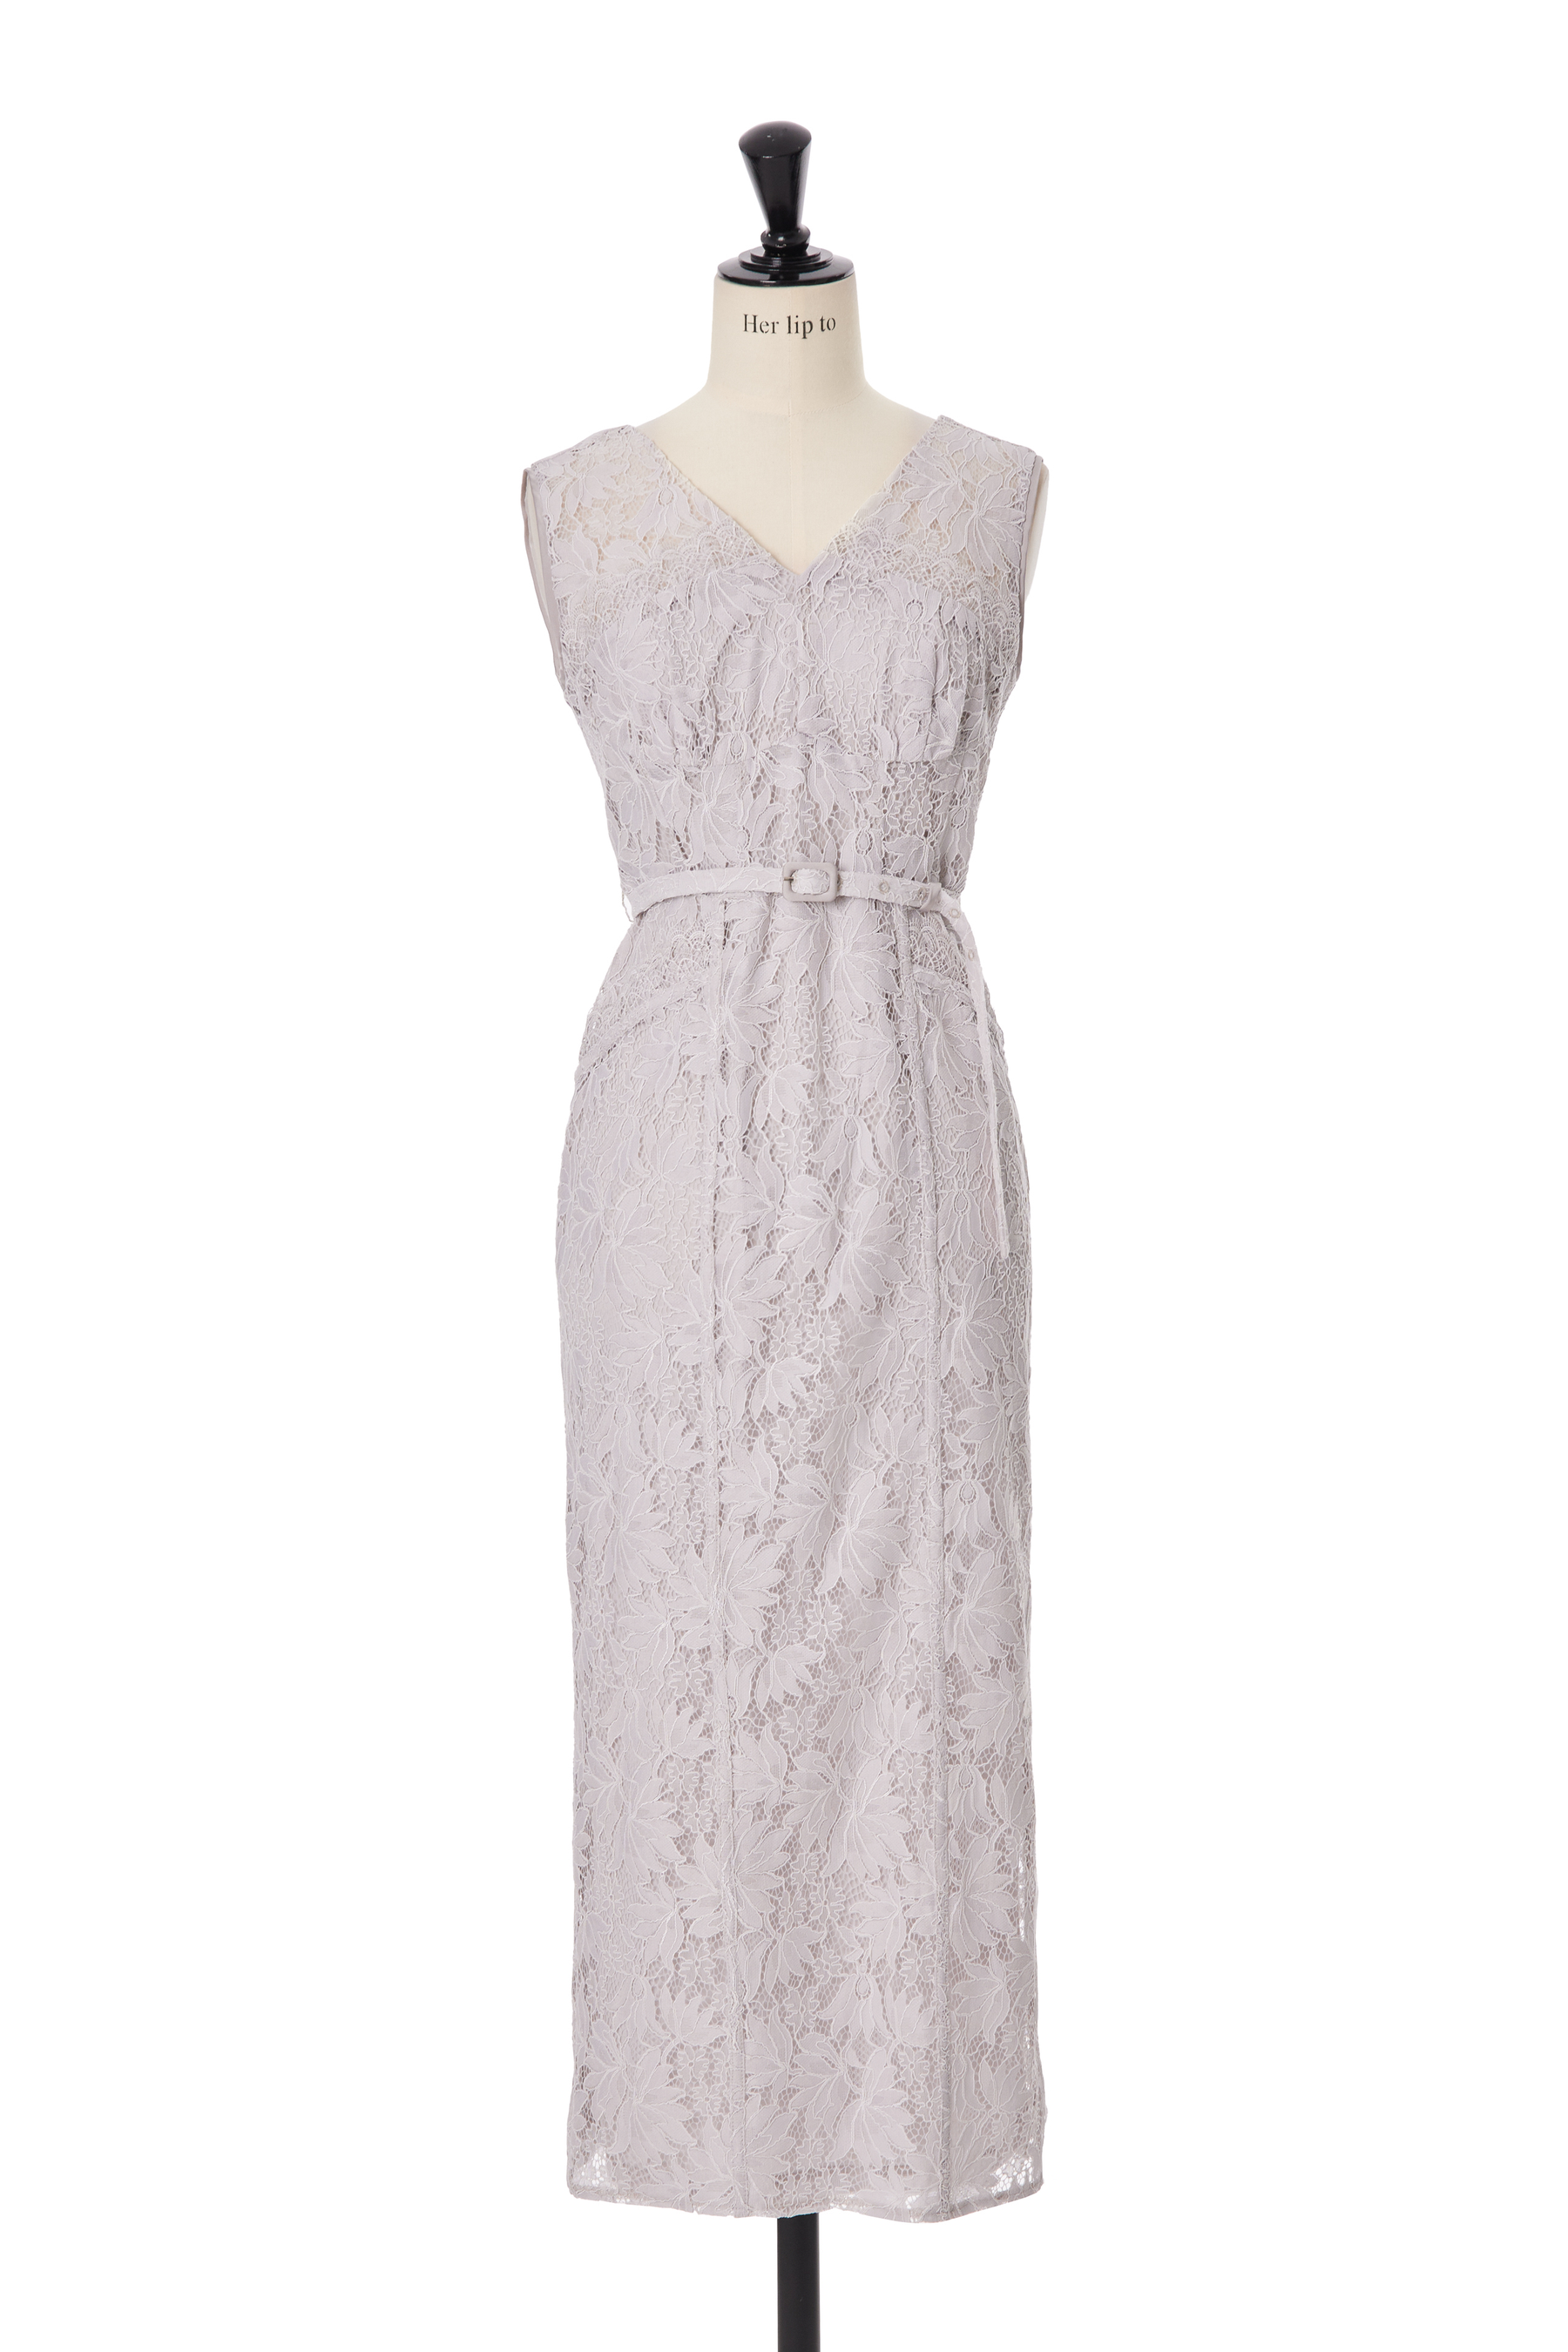 【6月上旬発送】【petale】Waltz Floral Lace Belted Dress